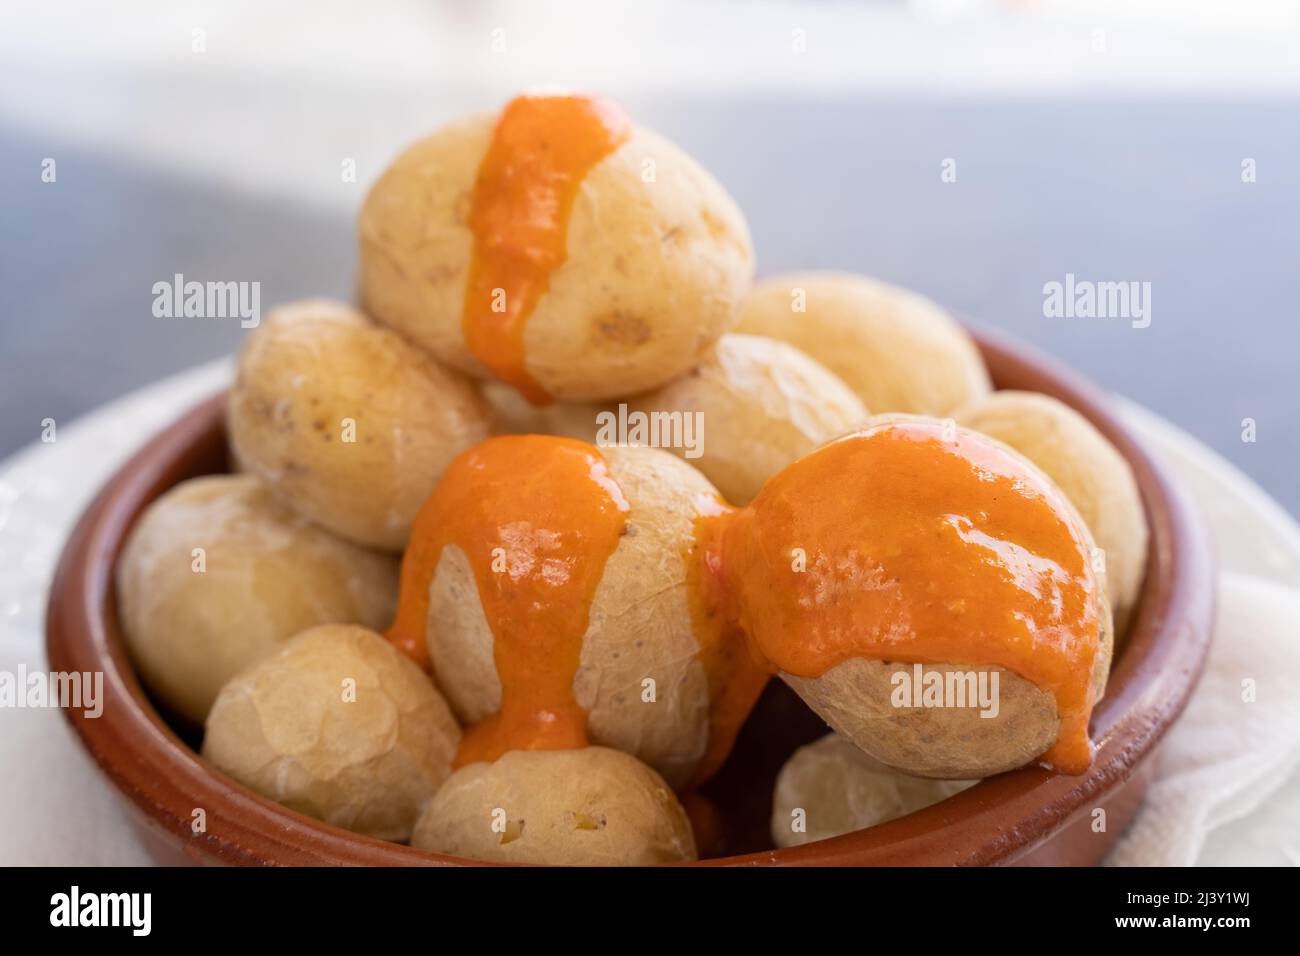 Papas arrugadas en plaque d'argile et sauce piquante au mojo sur le dessus. En-cas de pommes de terre ridées traditionnelles de l'île de Gran Canaria, Espagne Banque D'Images